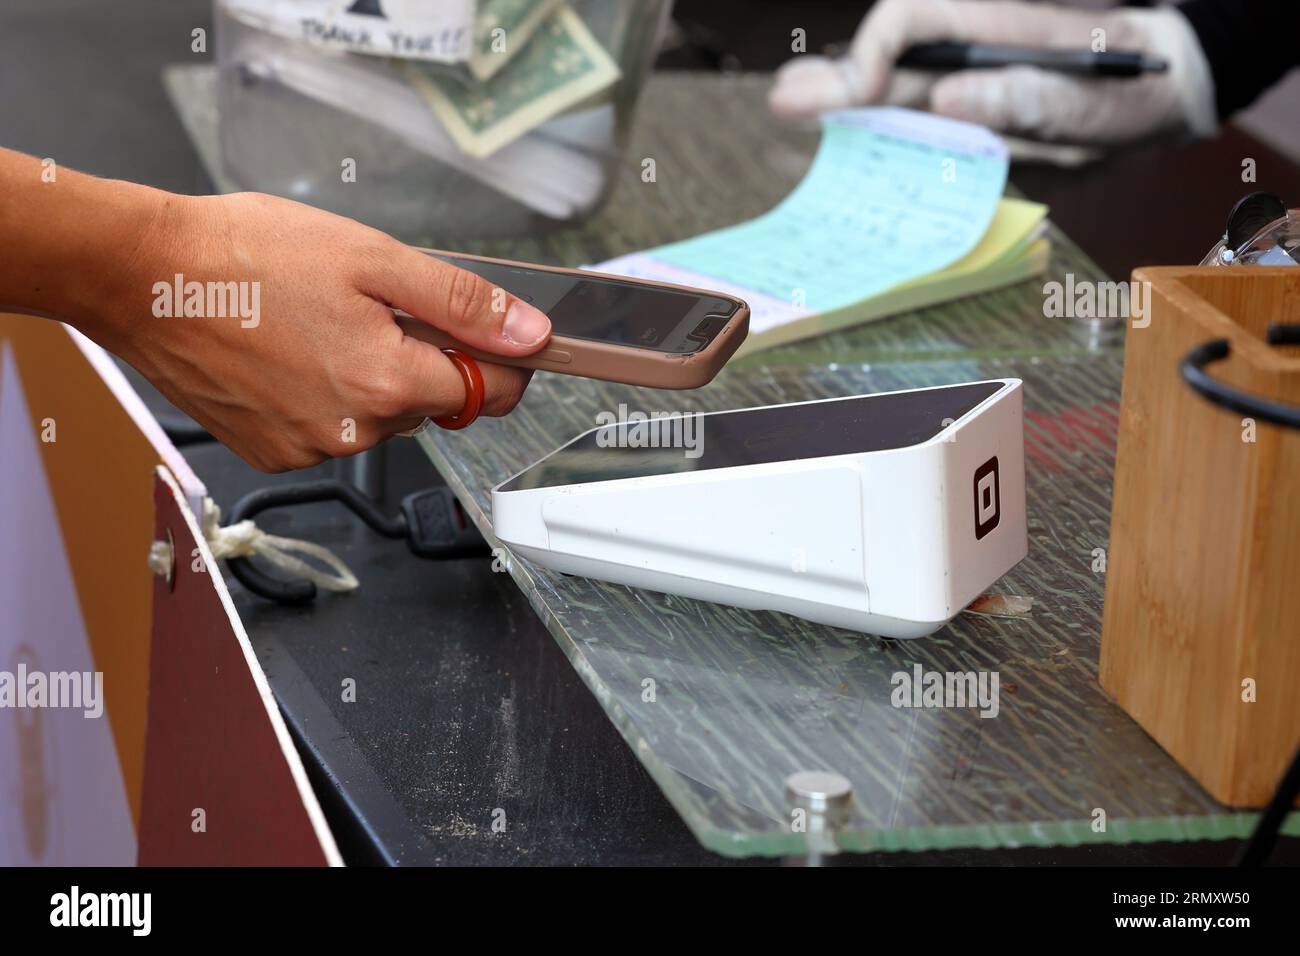 Eine Person hält ein Smartphone über ein drahtloses Square Terminal Point of Sales-Gerät, um eine NFC-mobile Zahlung oder kontaktlose digitale Zahlung zu tätigen. Stockfoto